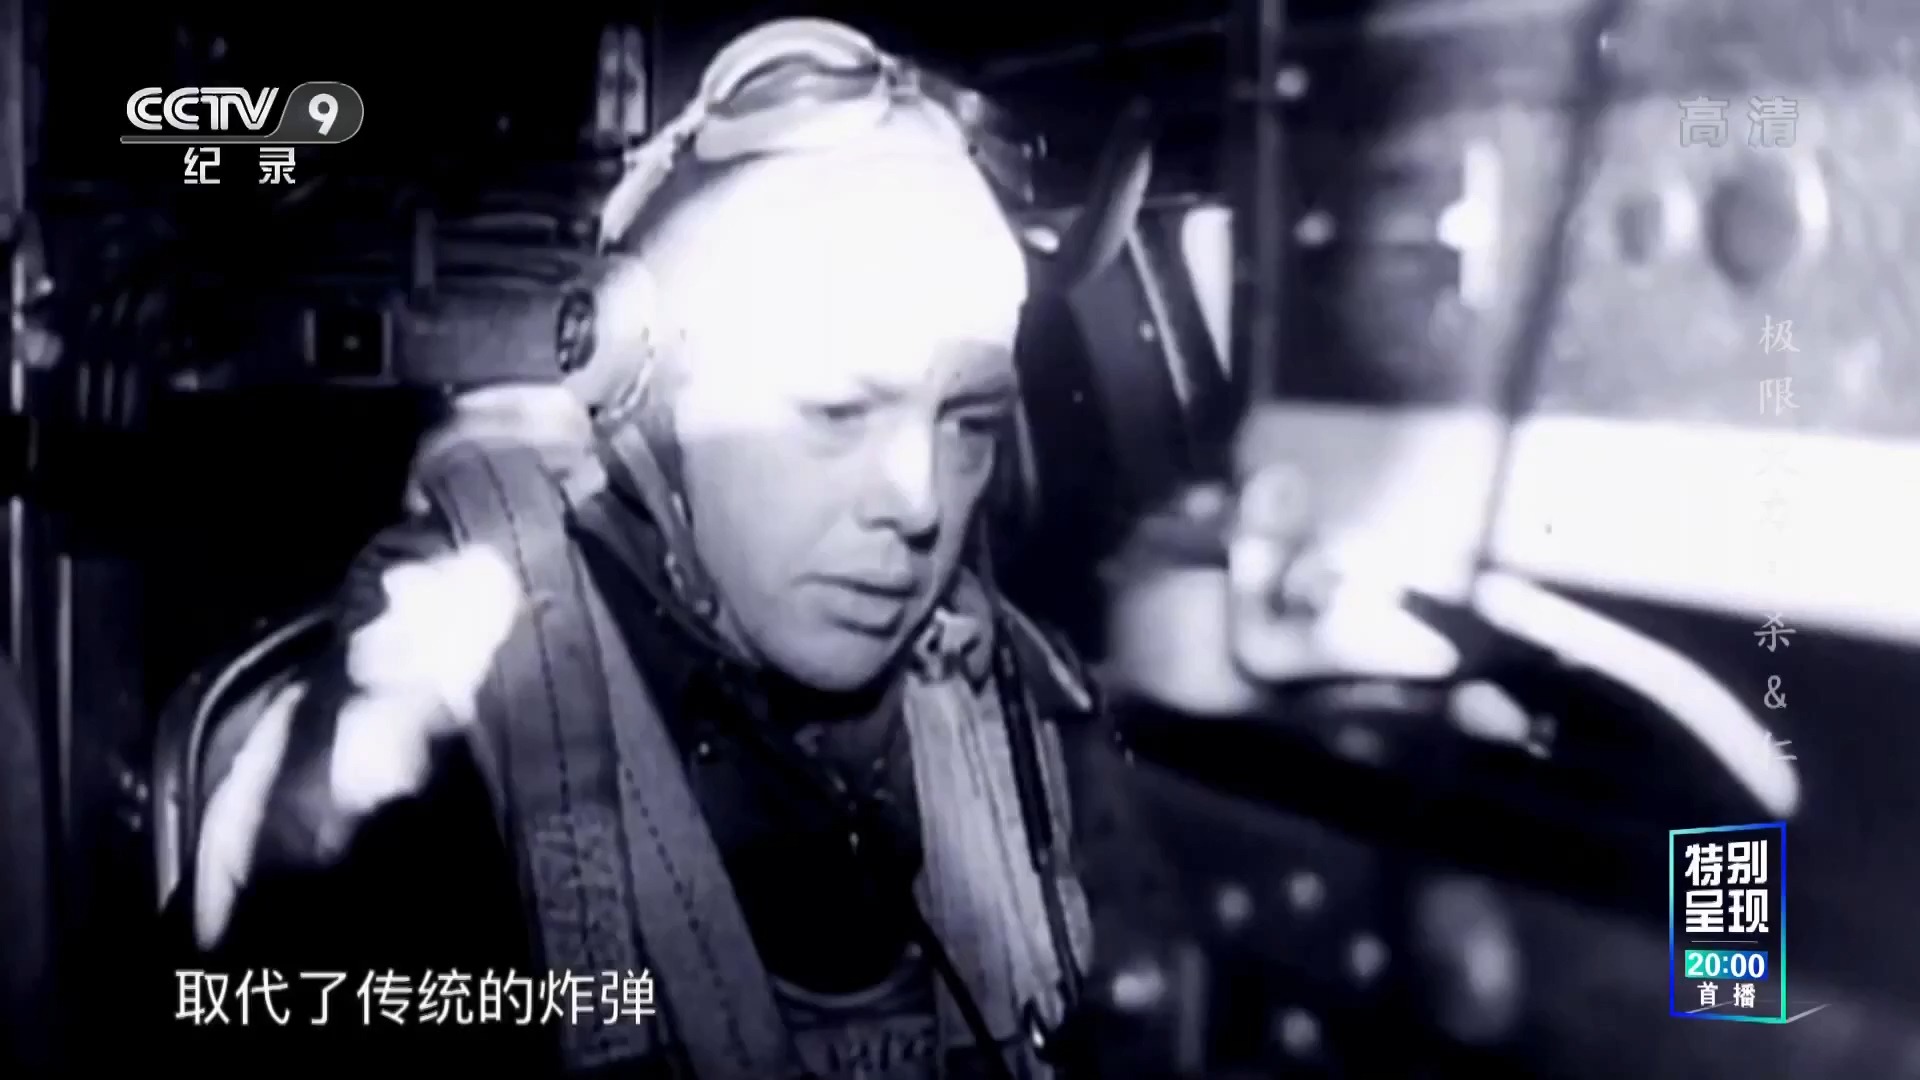 央视军武纪录片《极限火力》剪辑:李梅火攻东京——凝固汽油弹的巨大